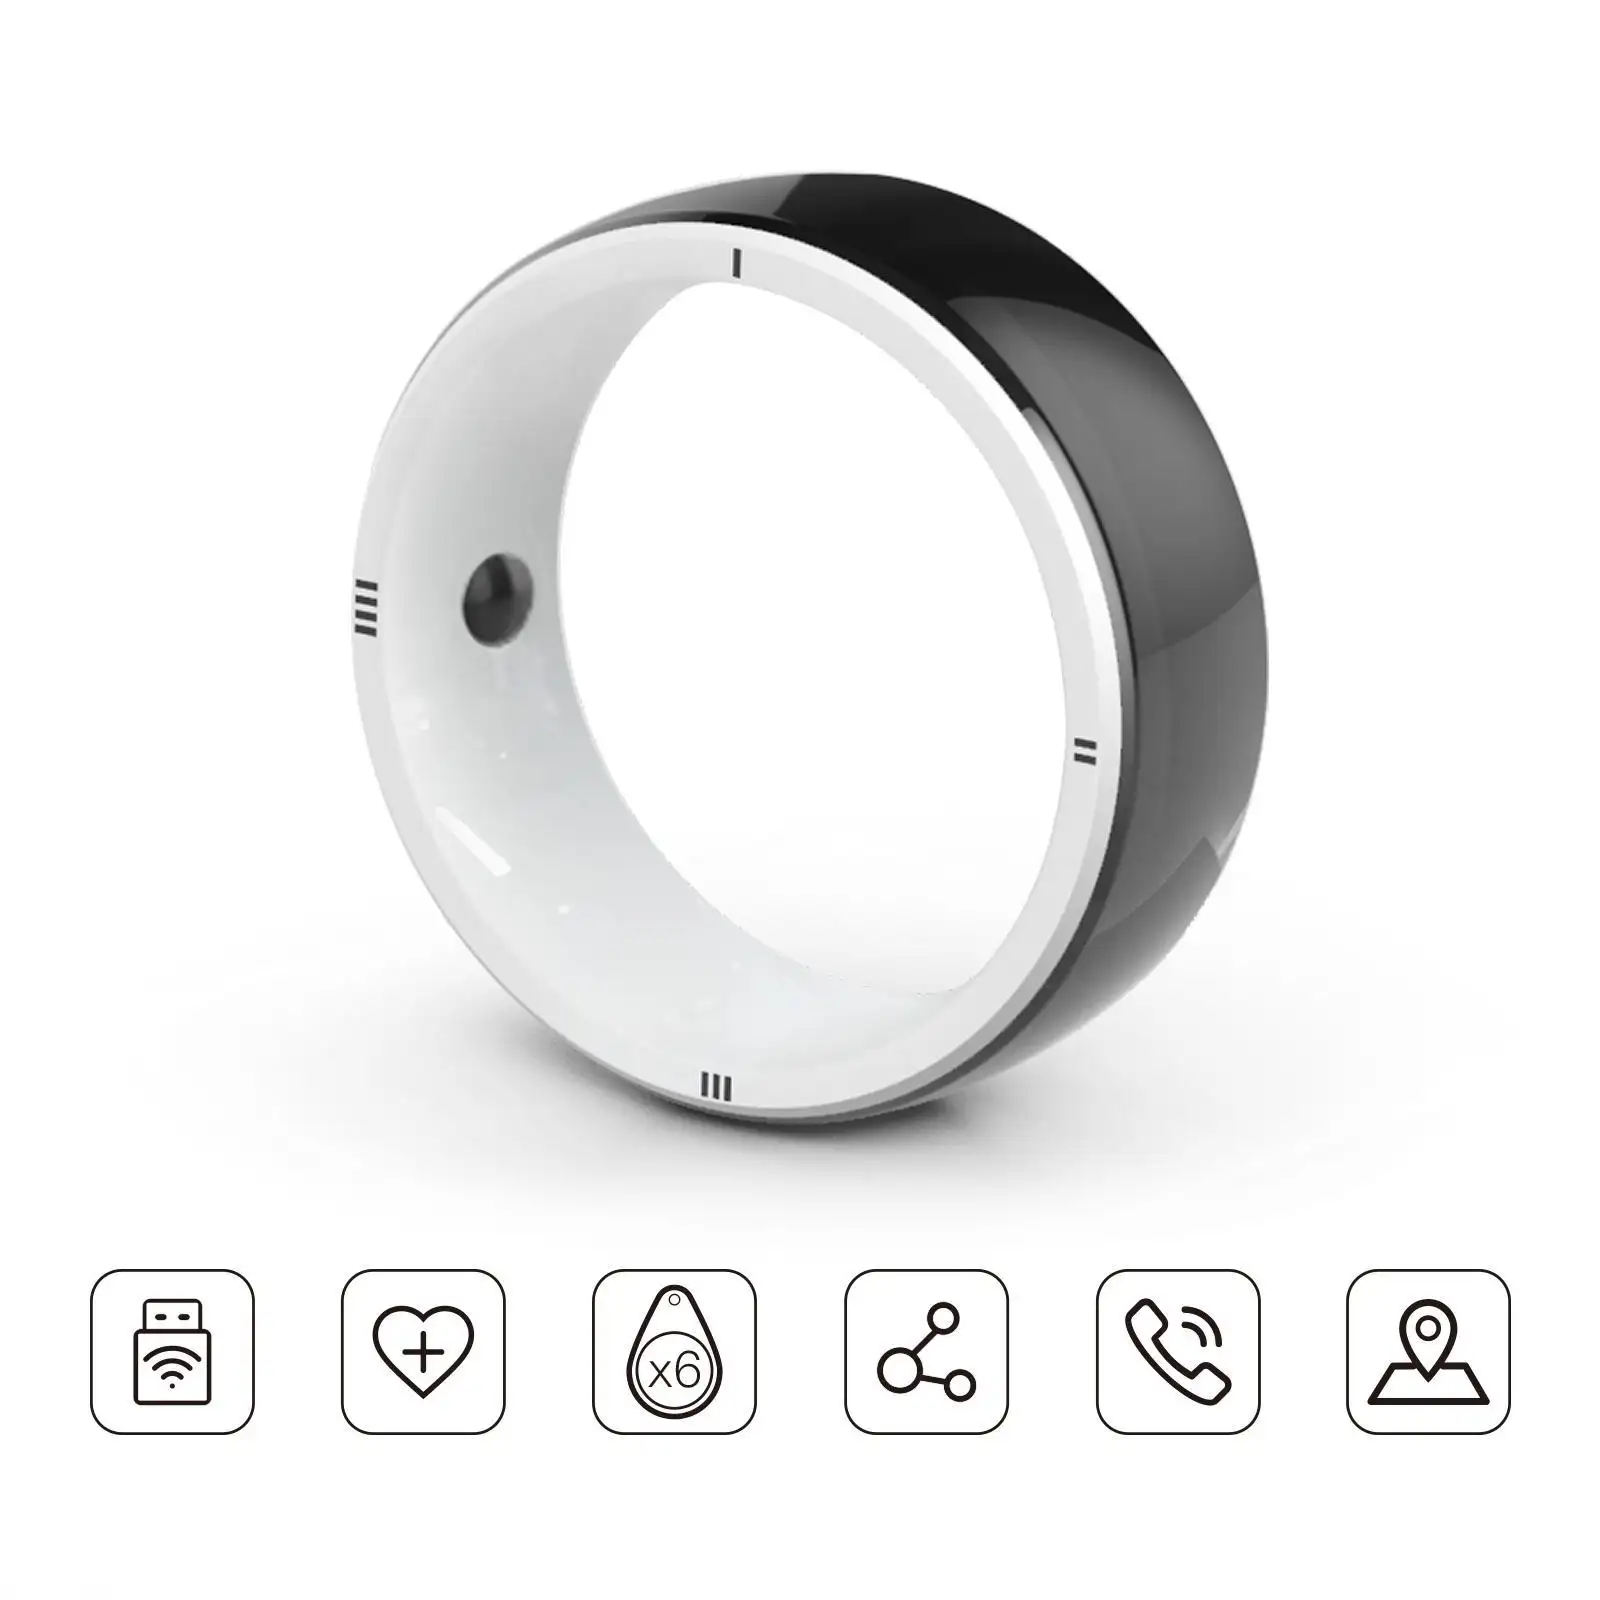 JAKCOM R5 สมาร์ทแหวน ใหม่ สมาร์ทแหวน มูลค่ายิ่งกว่าสายเคเบิลสําหรับเพลงสําหรับมือถือ ปลดล็อคโทรศัพท์มือถือ เครื่องประดับต้นไม้ ล่าสุด